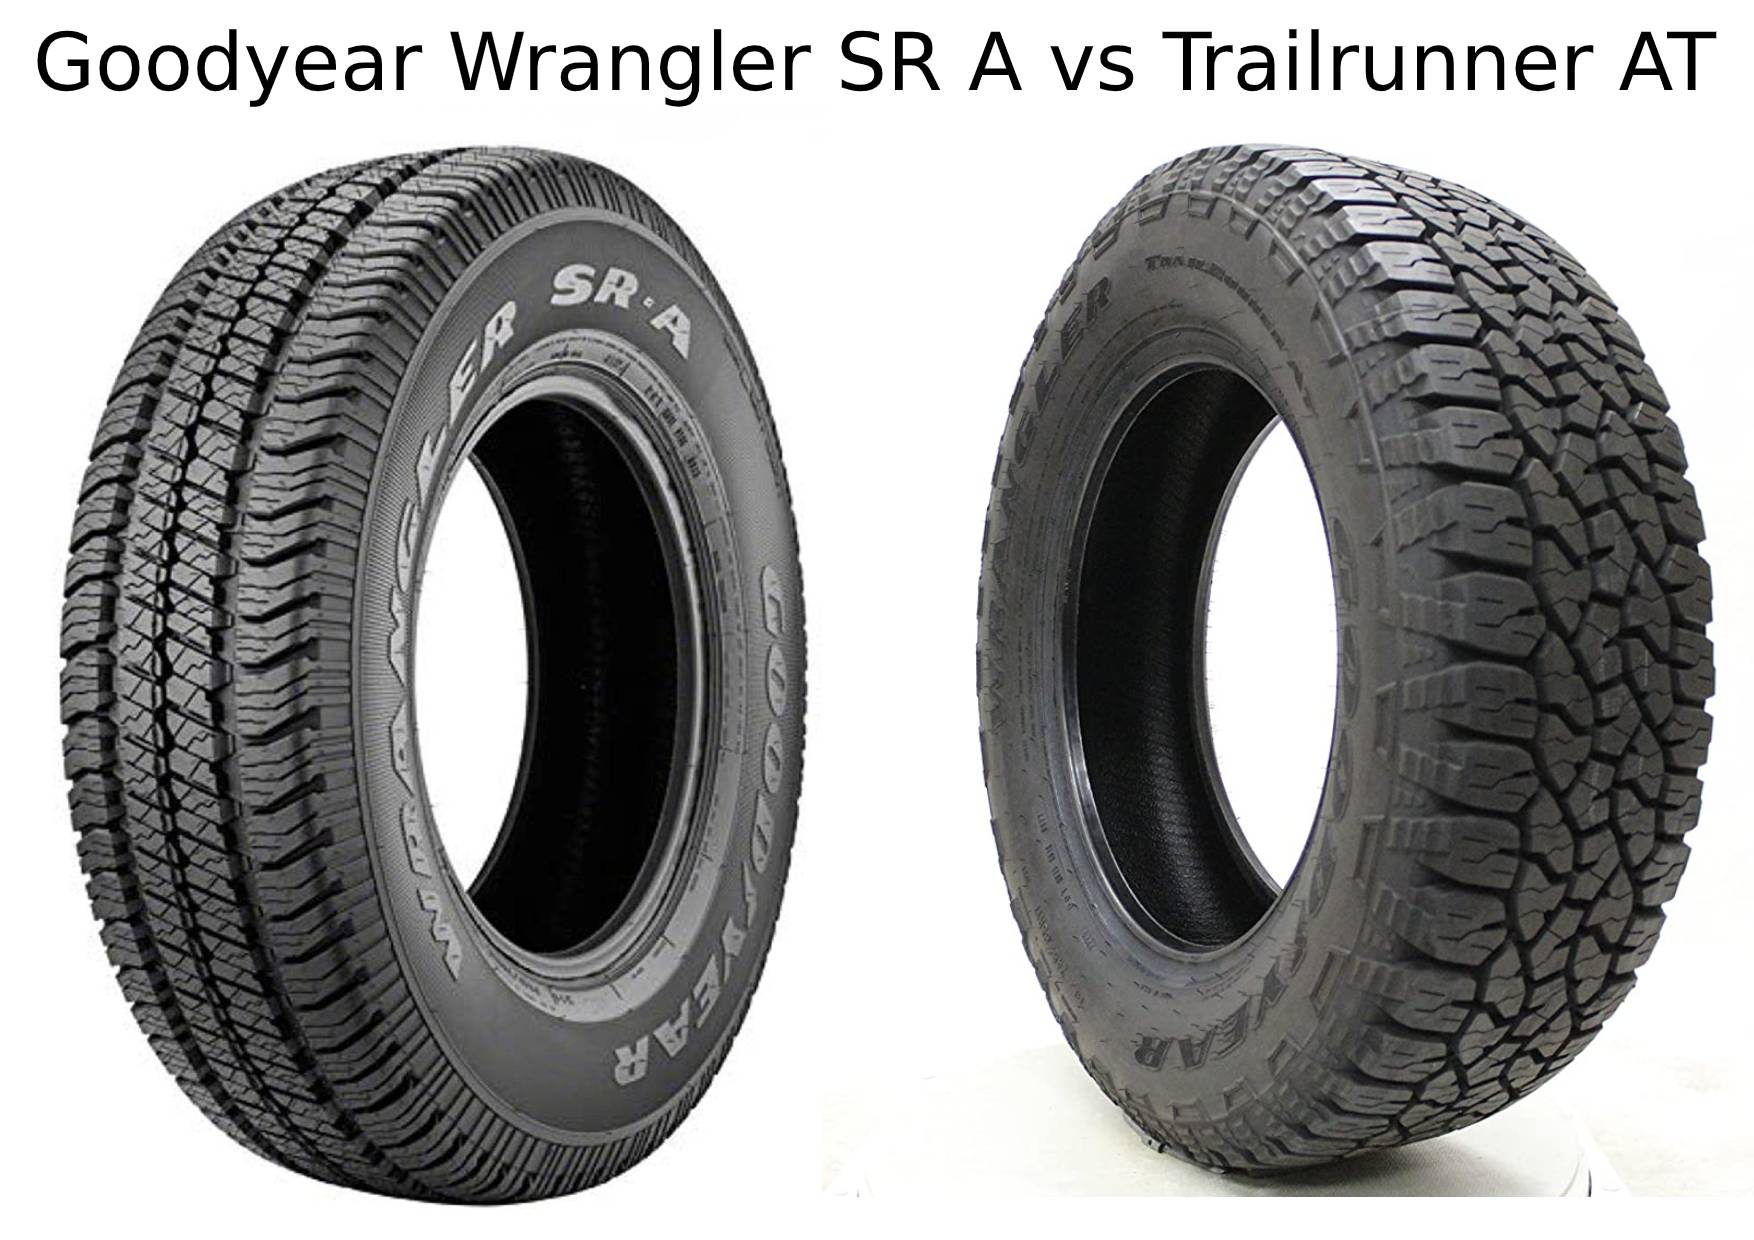 Goodyear Wrangler SR A vs Trailrunner AT 